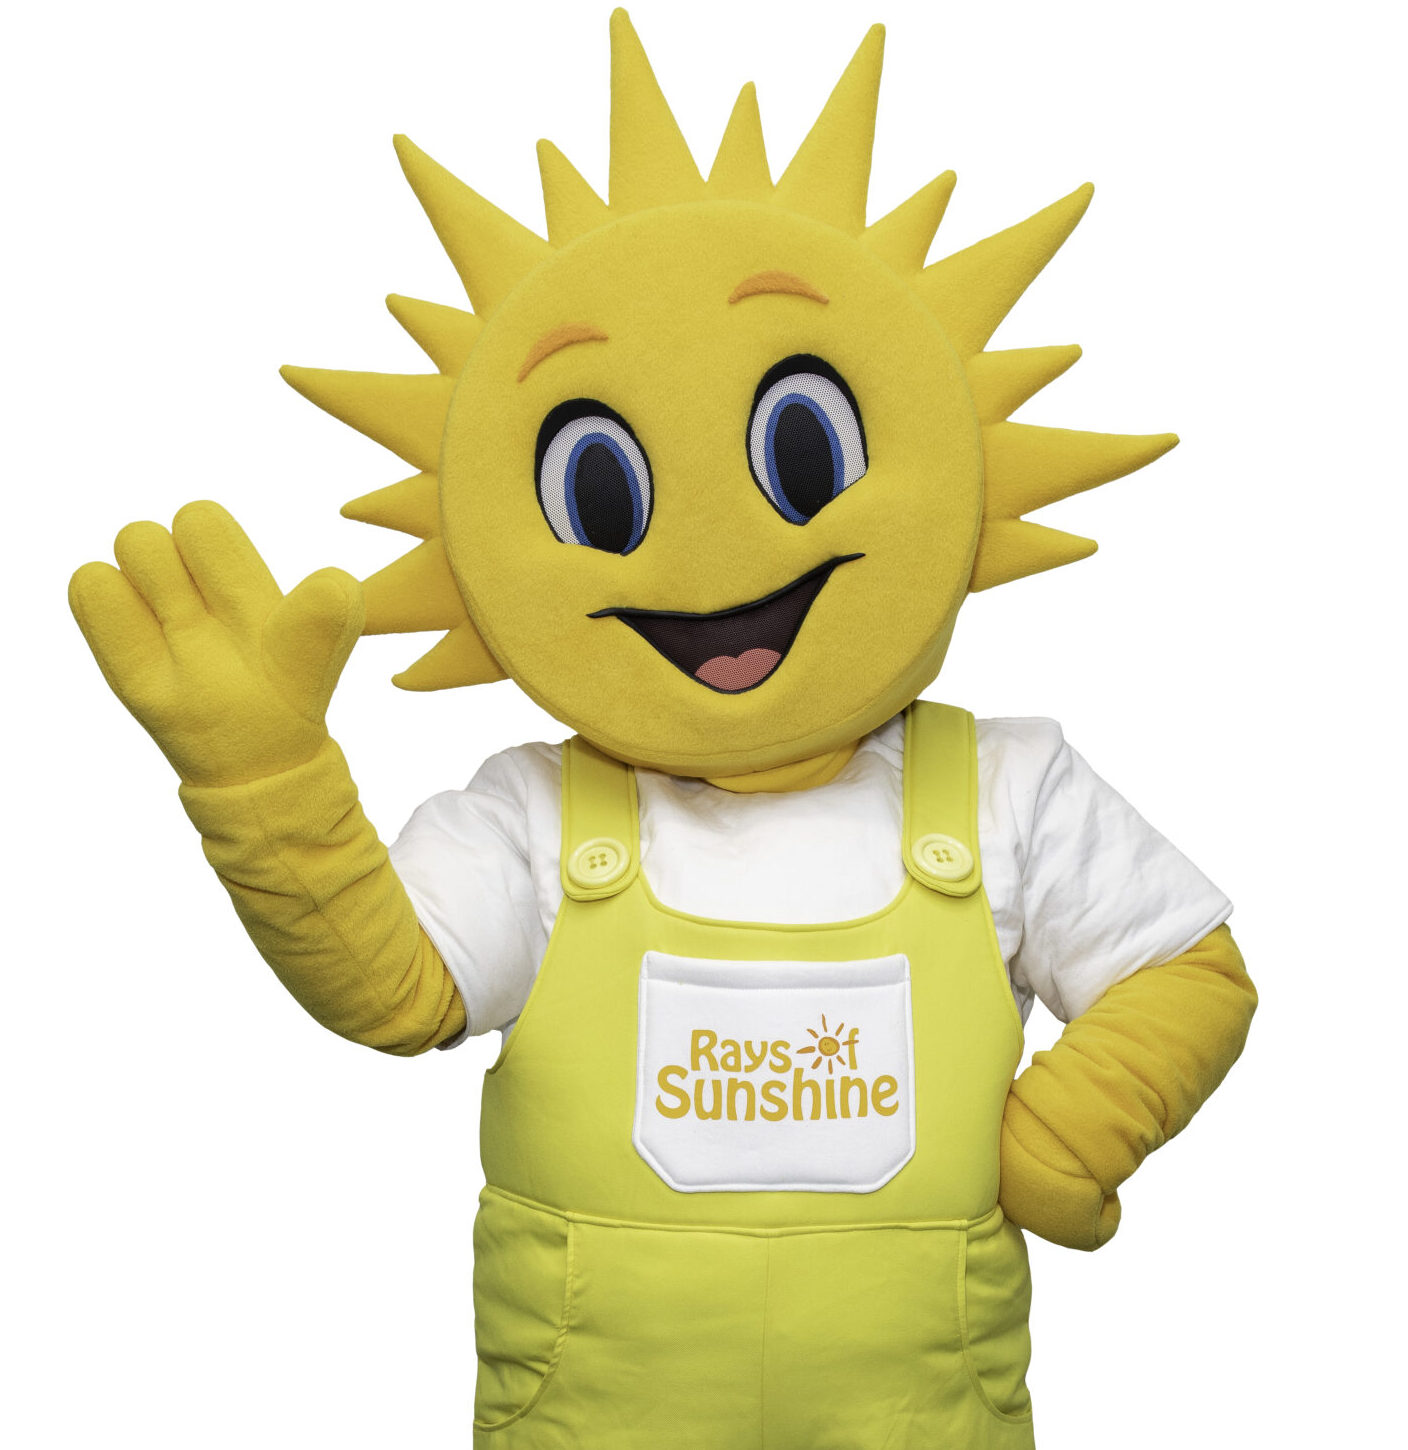 Yellow sun mascot waving